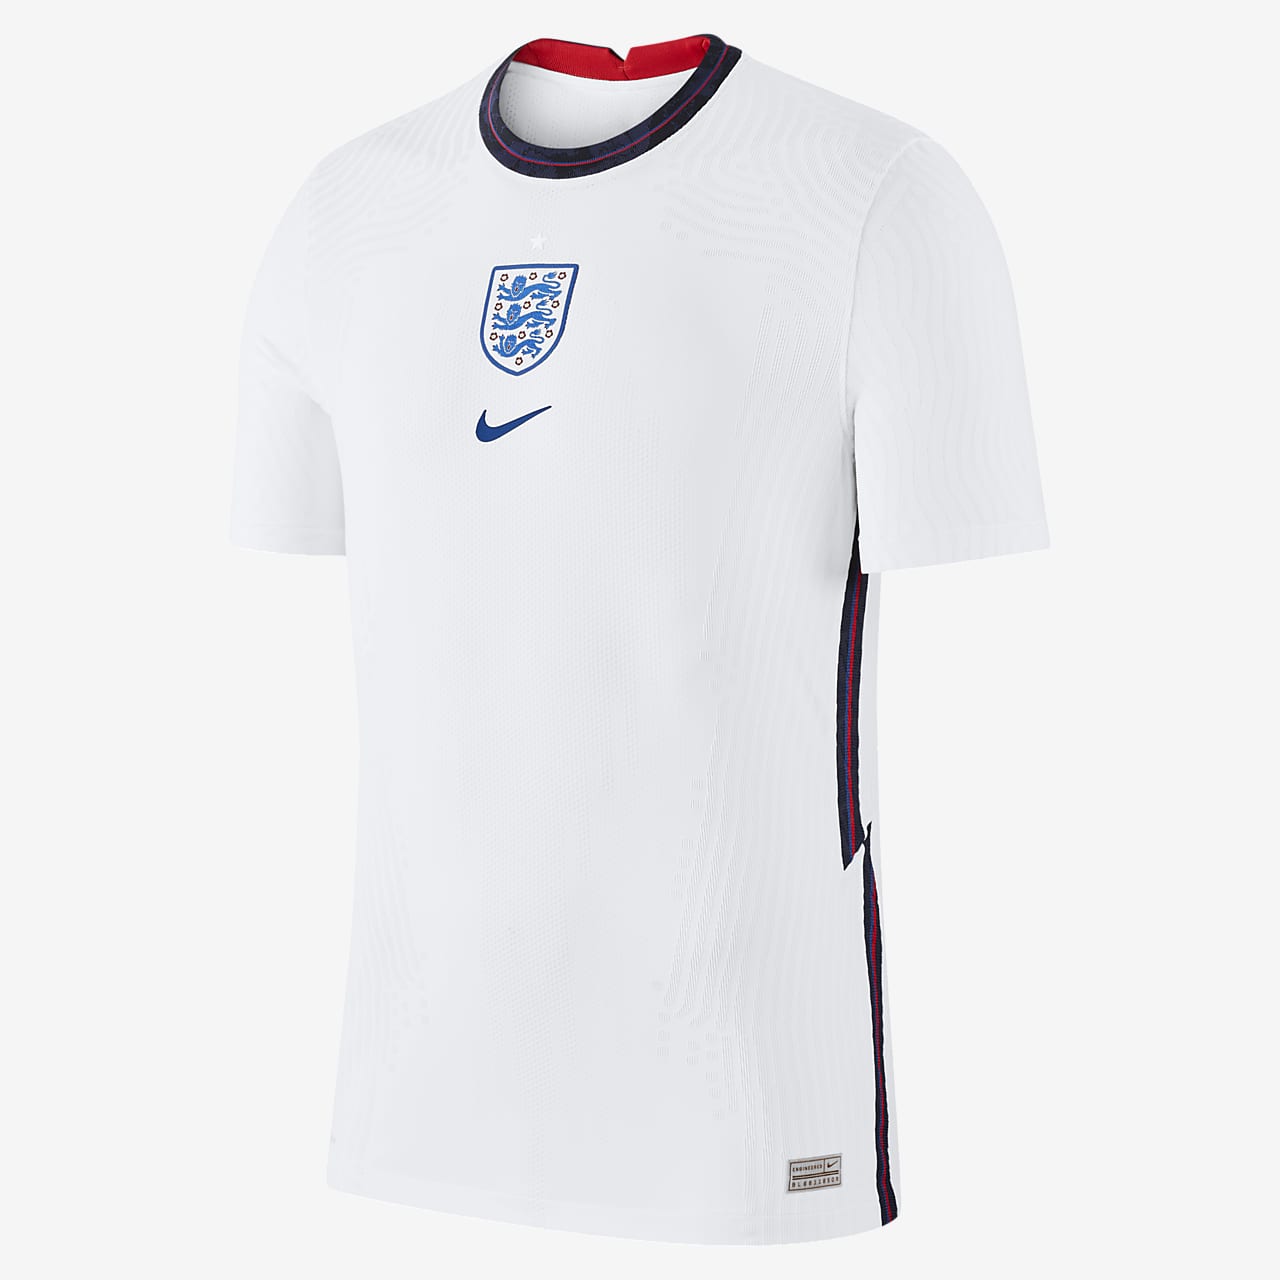 Camiseta de fútbol de local para hombre Vapor Match de Inglaterra 2020.  Nike.com